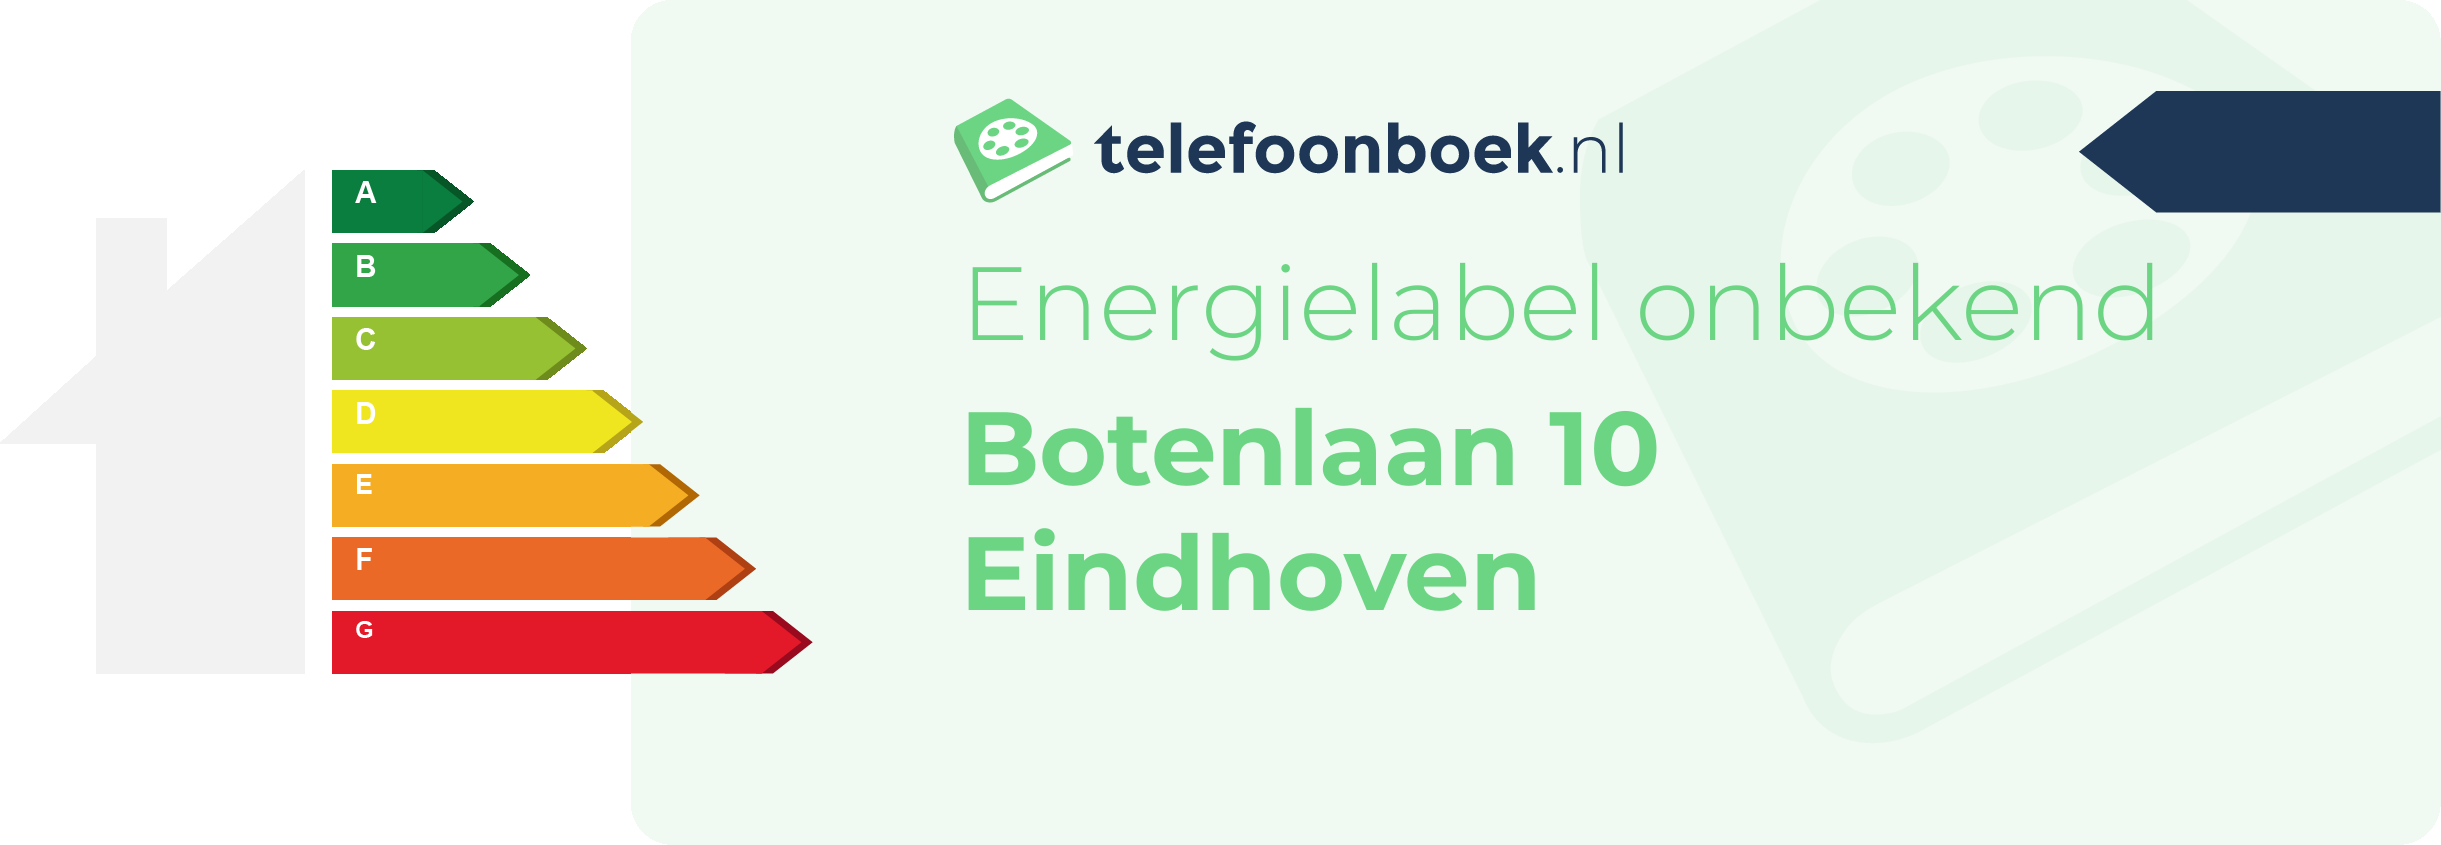 Energielabel Botenlaan 10 Eindhoven